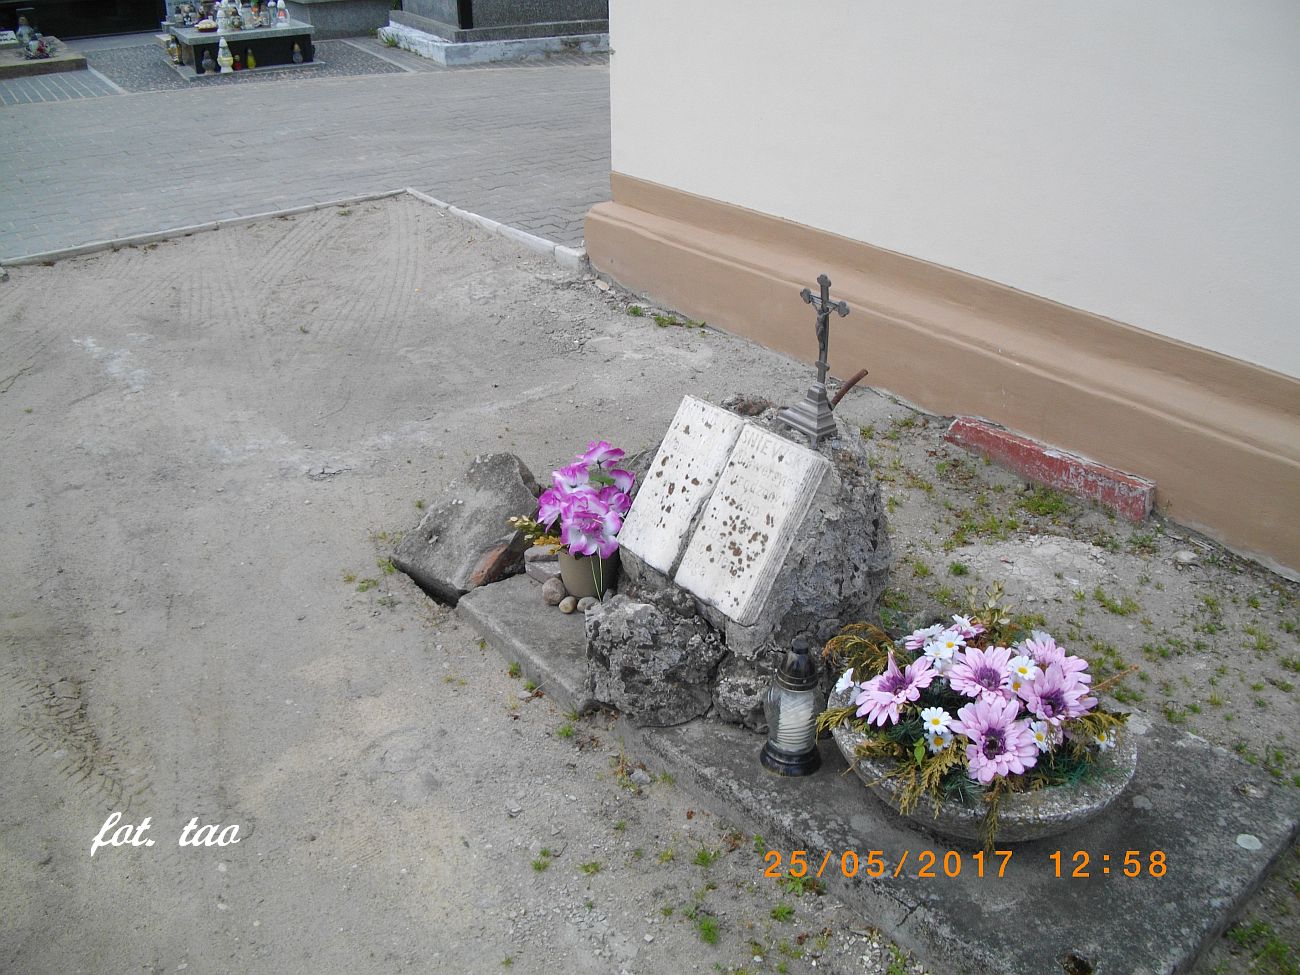 Gincy pod koami samochodw nagrobek jednego z fundatorw kaplicy cmentarnej na cmentarzu parafialnym w Sierpcu, maj 2017 r.